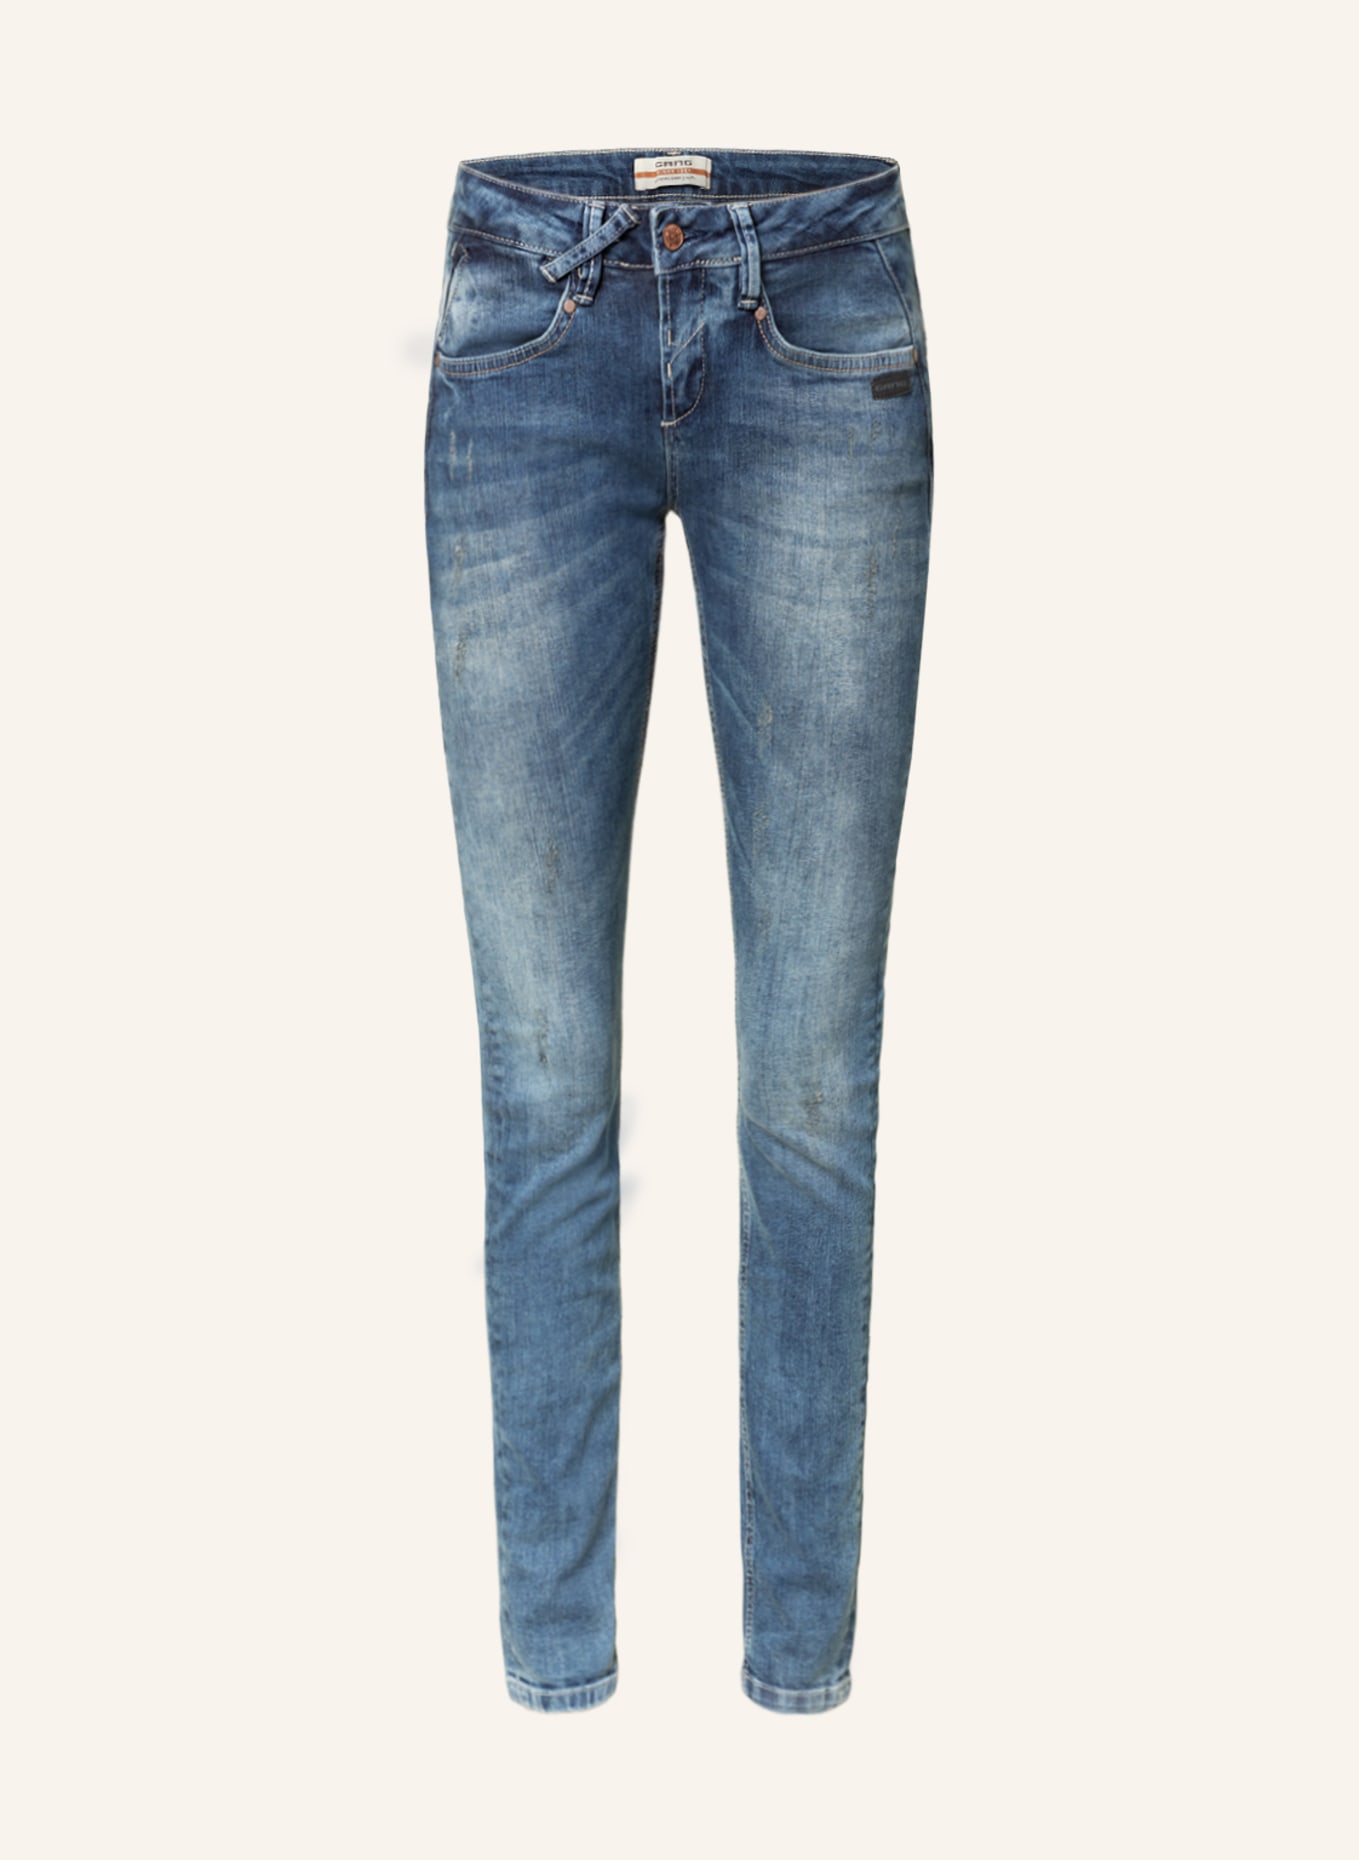 GANG Skinny Jeans NELE , Farbe: 2794 predator wash (Bild 1)